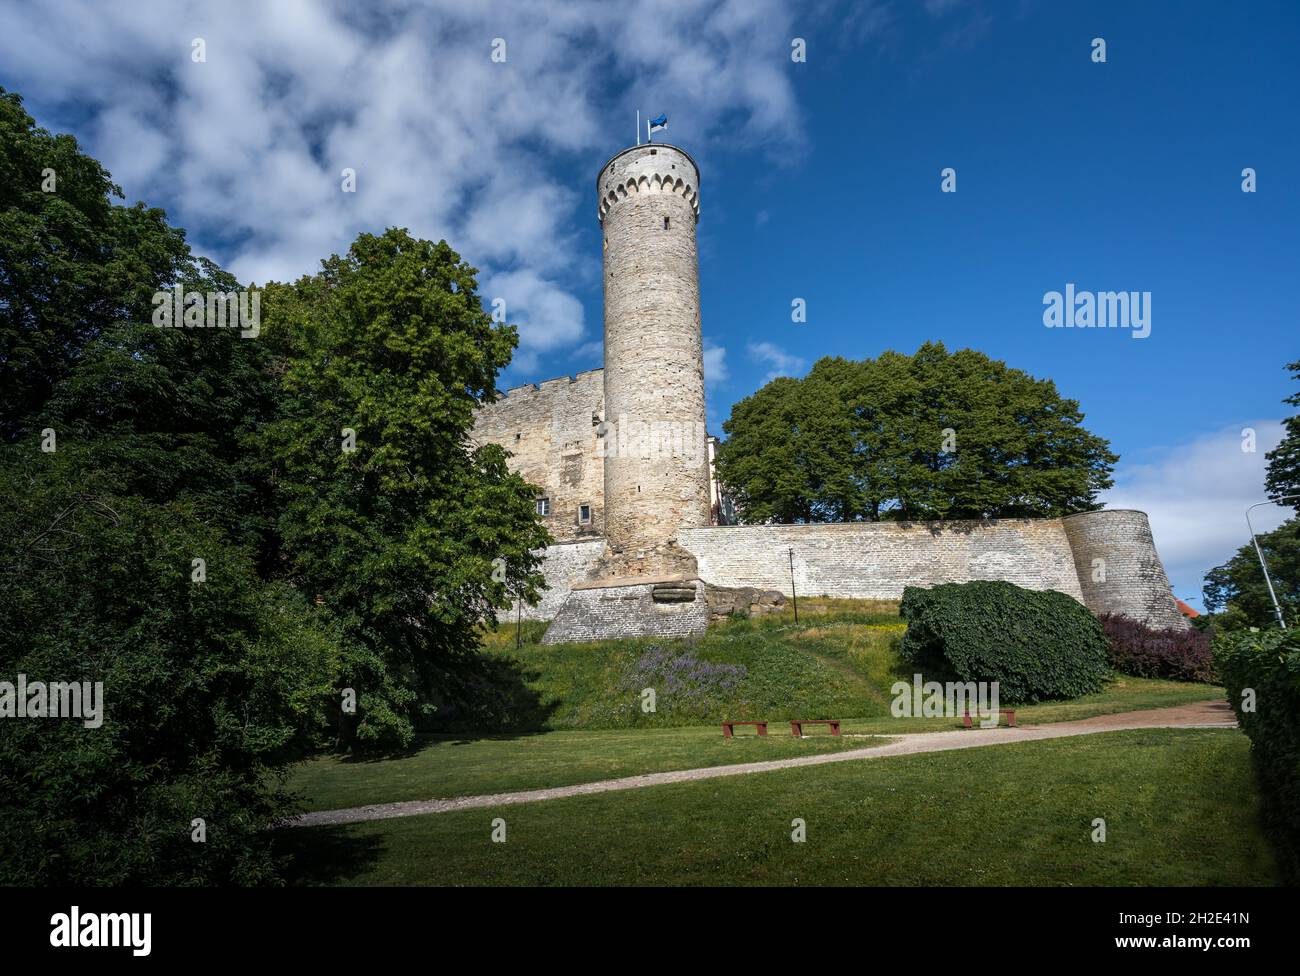 Tall Hermann Tower (Pikk Hermann) - Tallinn, Estonia Stock Photo